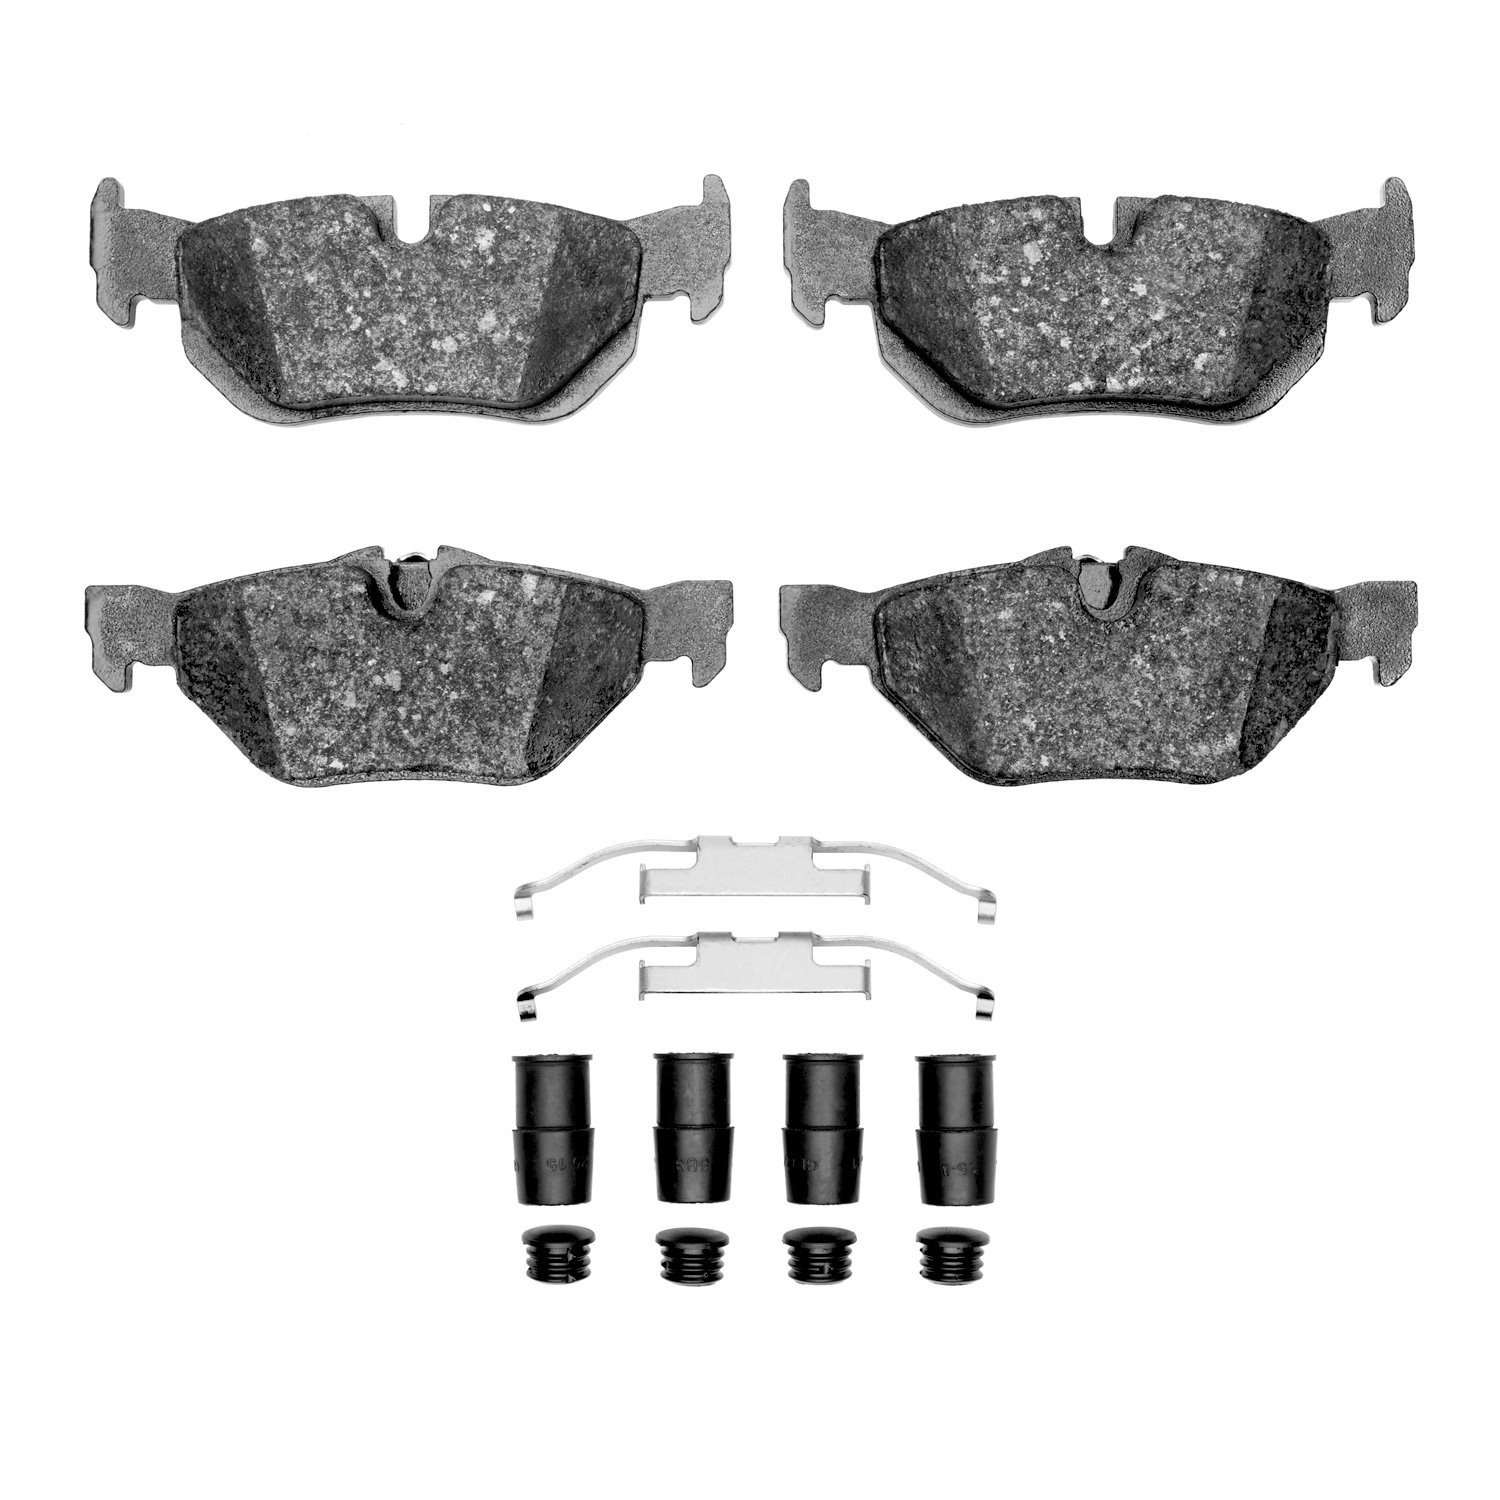 1310-1267-01 3000-Series Ceramic Brake Pads & Hardware Kit, 2006-2015 BMW, Position: Rear